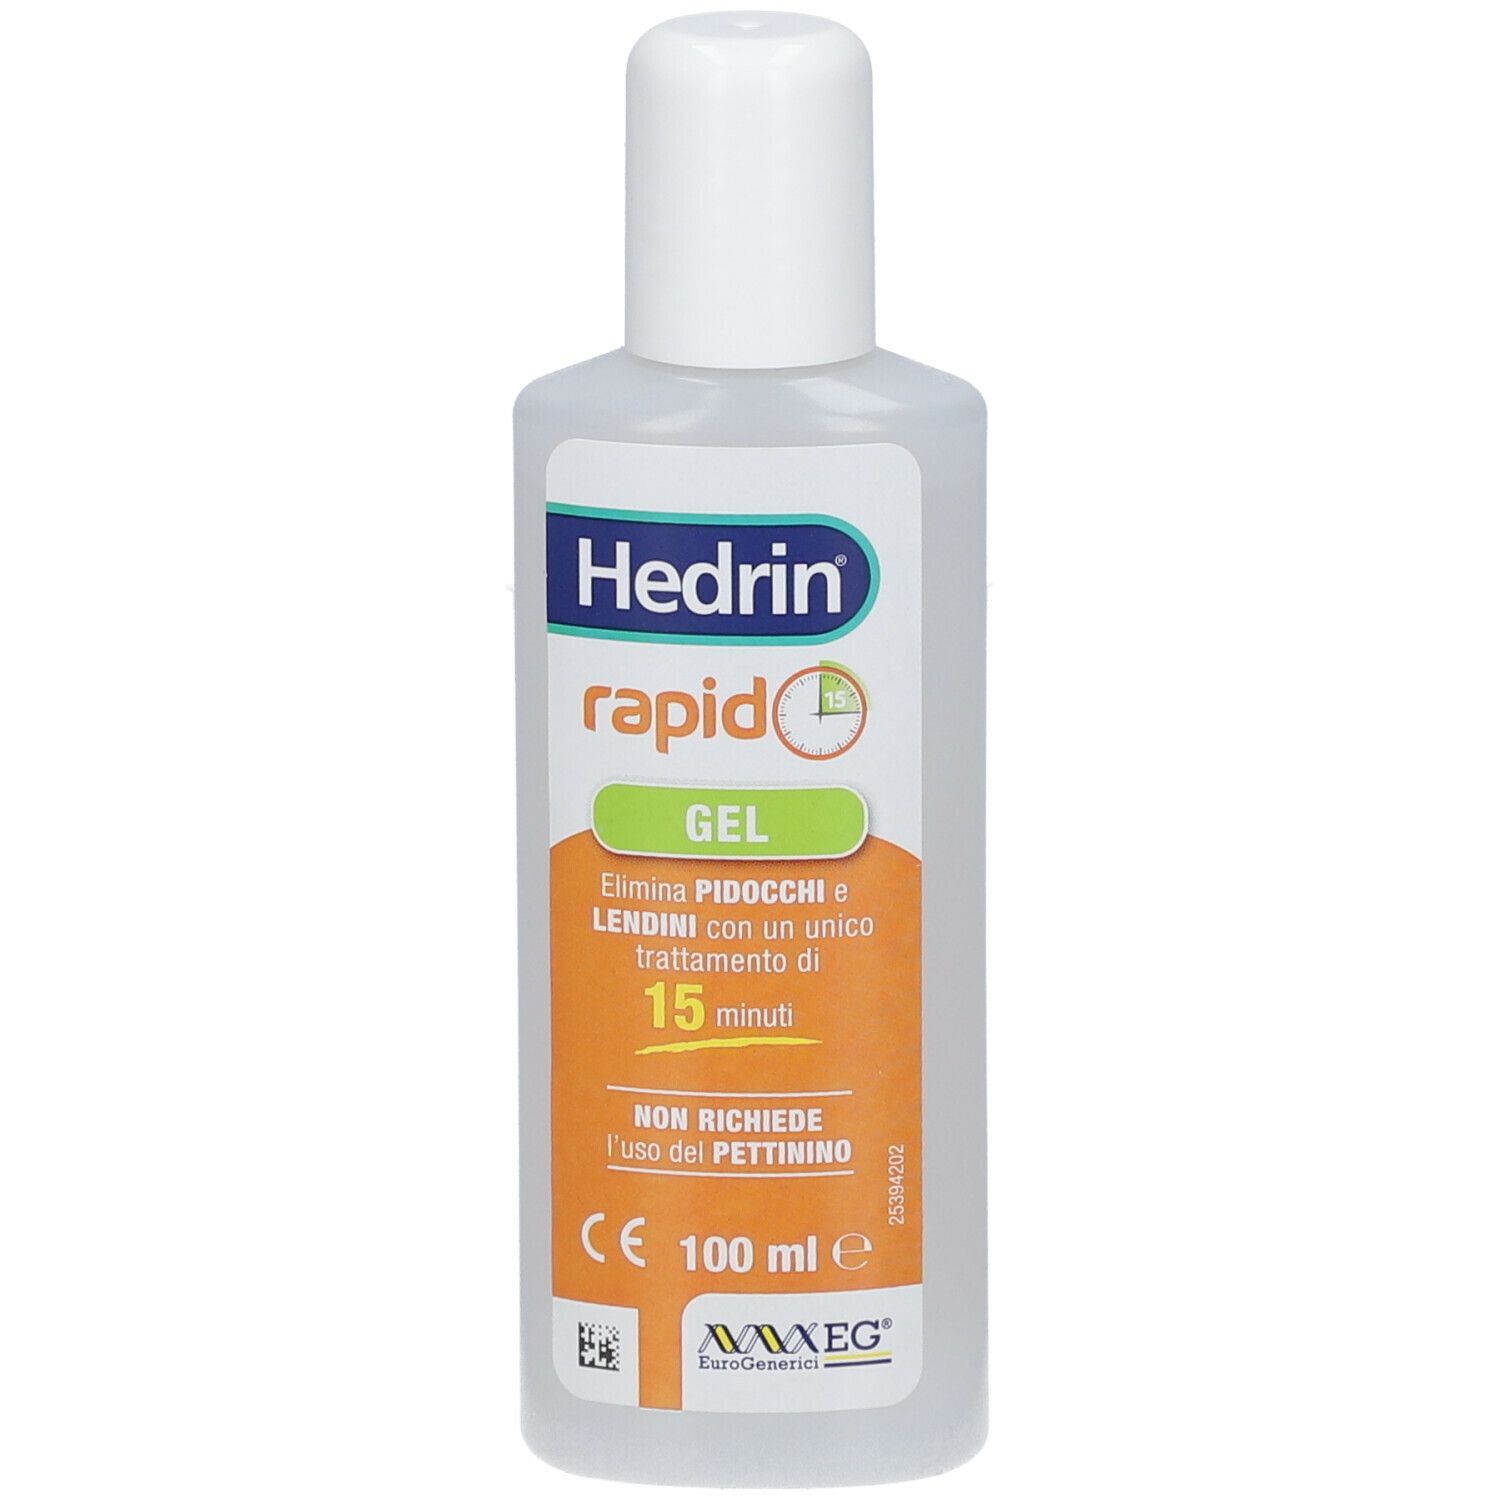 Hedrin® Rapido Gel